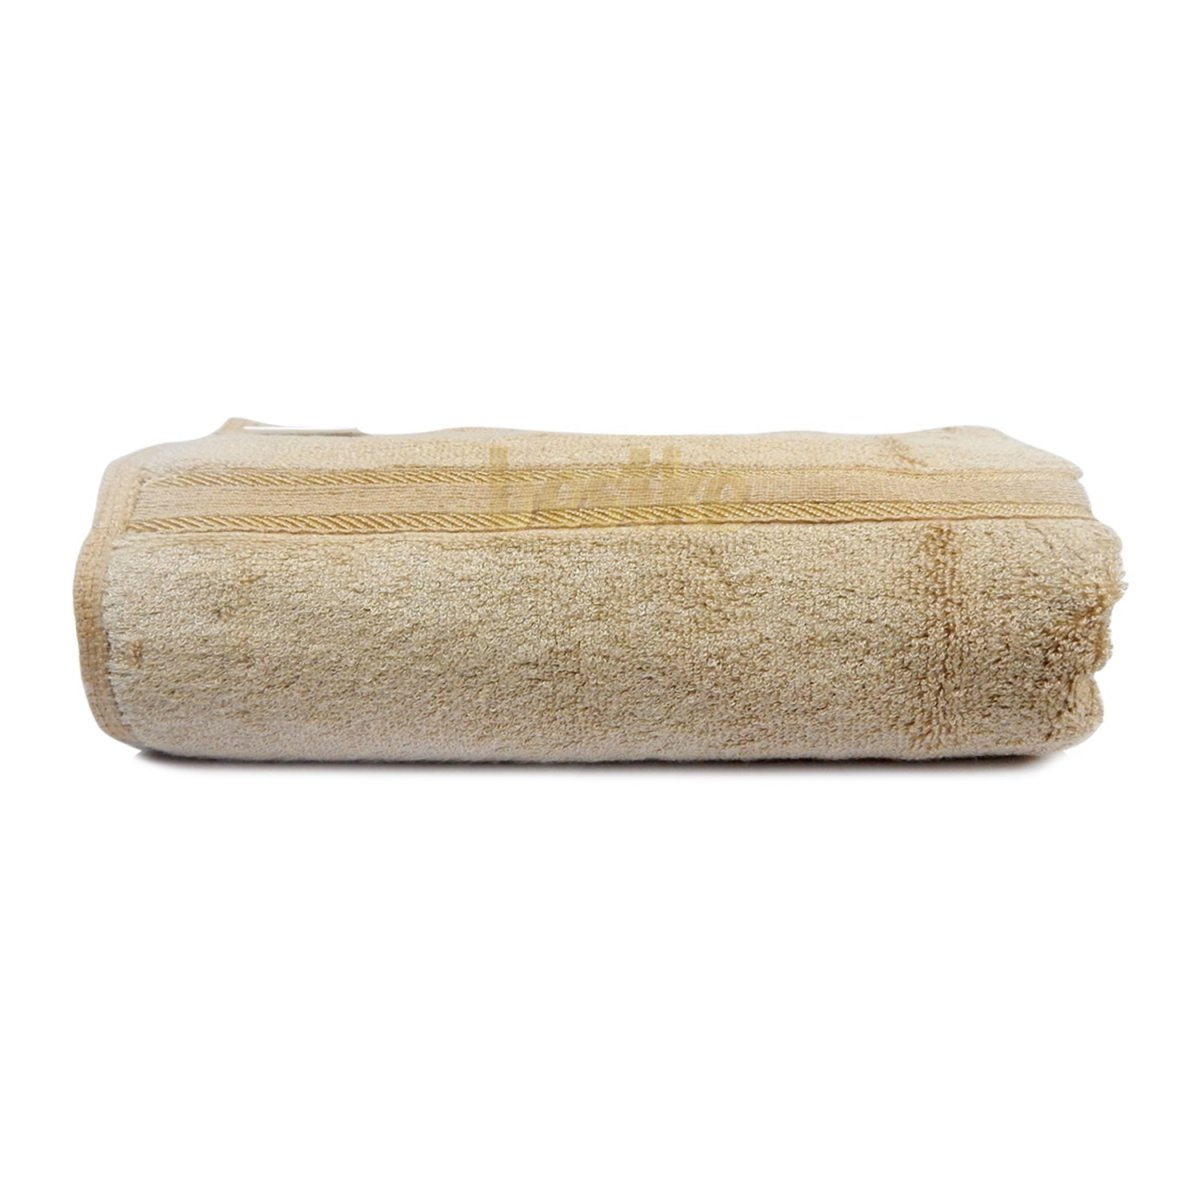 Khăn Tắm Bamboo Bestke màu nâu, 120*60 = 320g